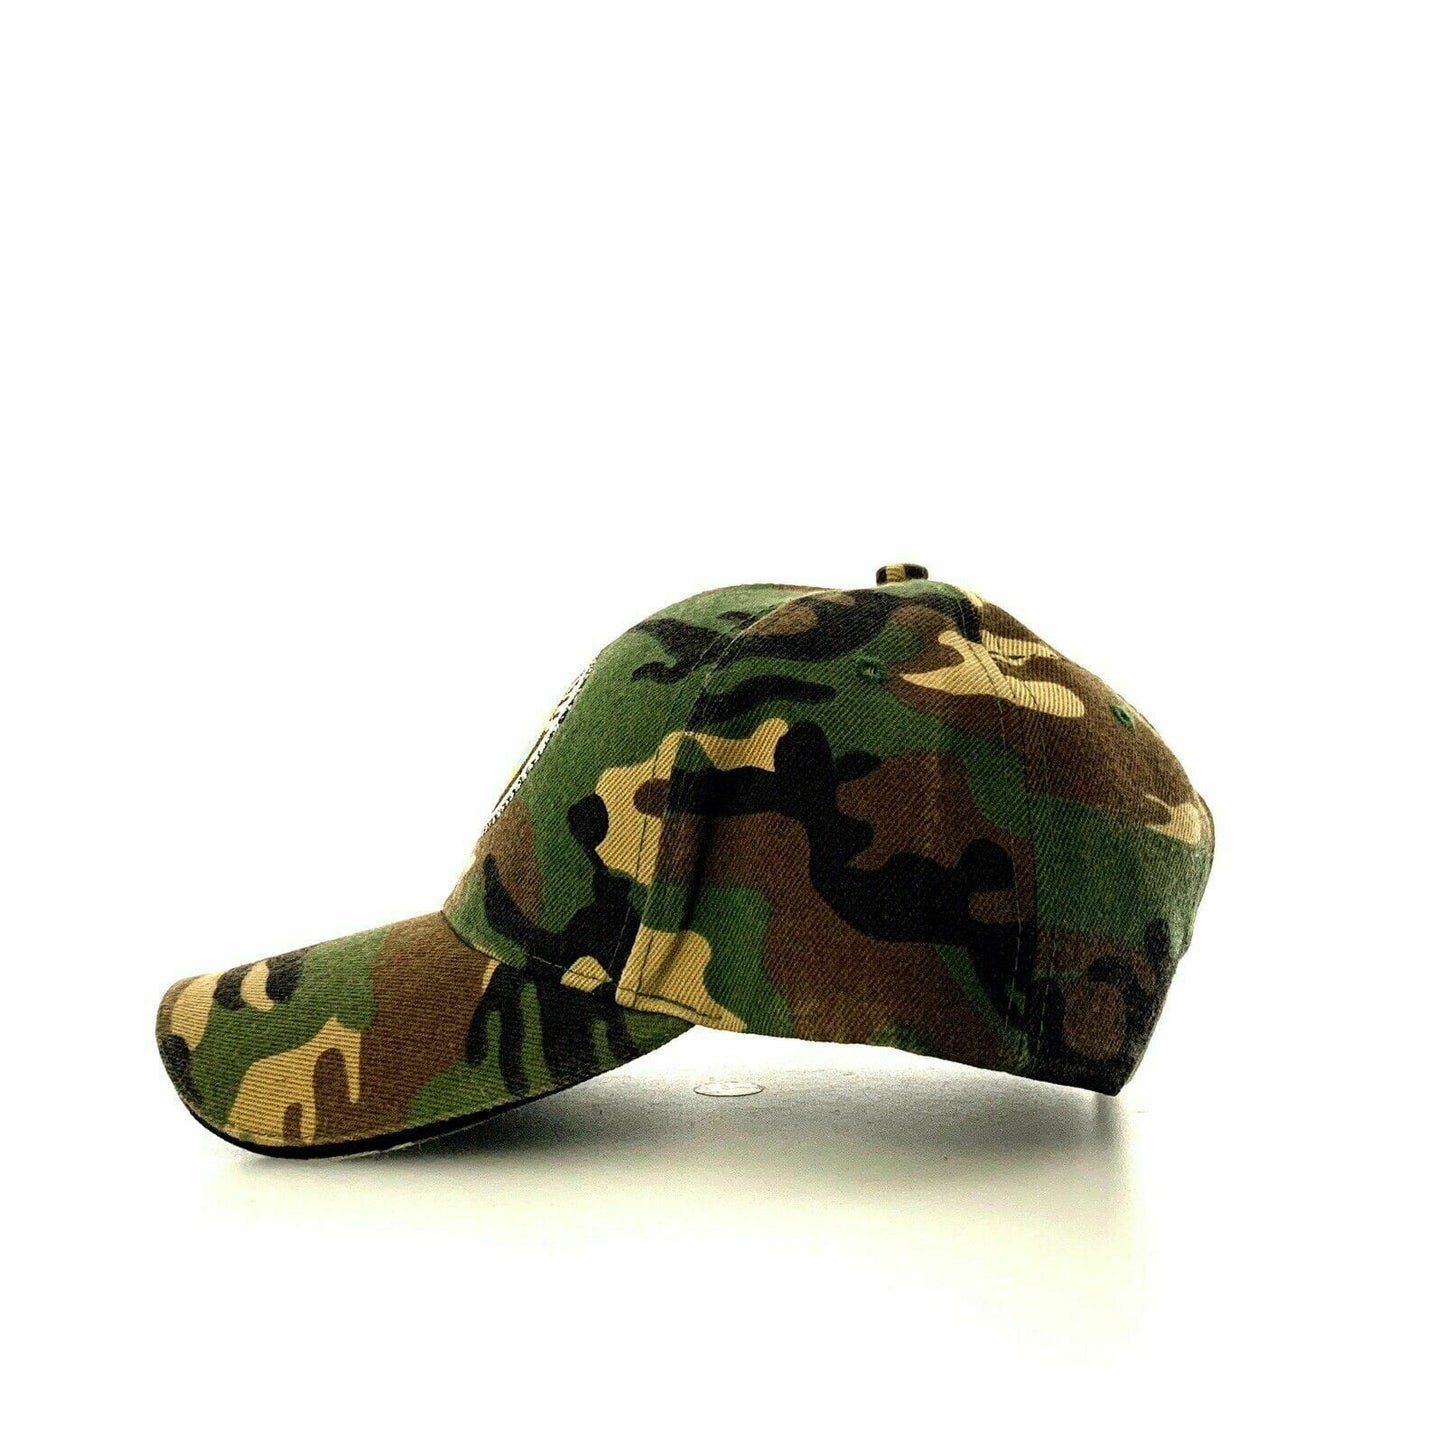 United States Navy Camouflage Adjustable Baseball Hat Cap